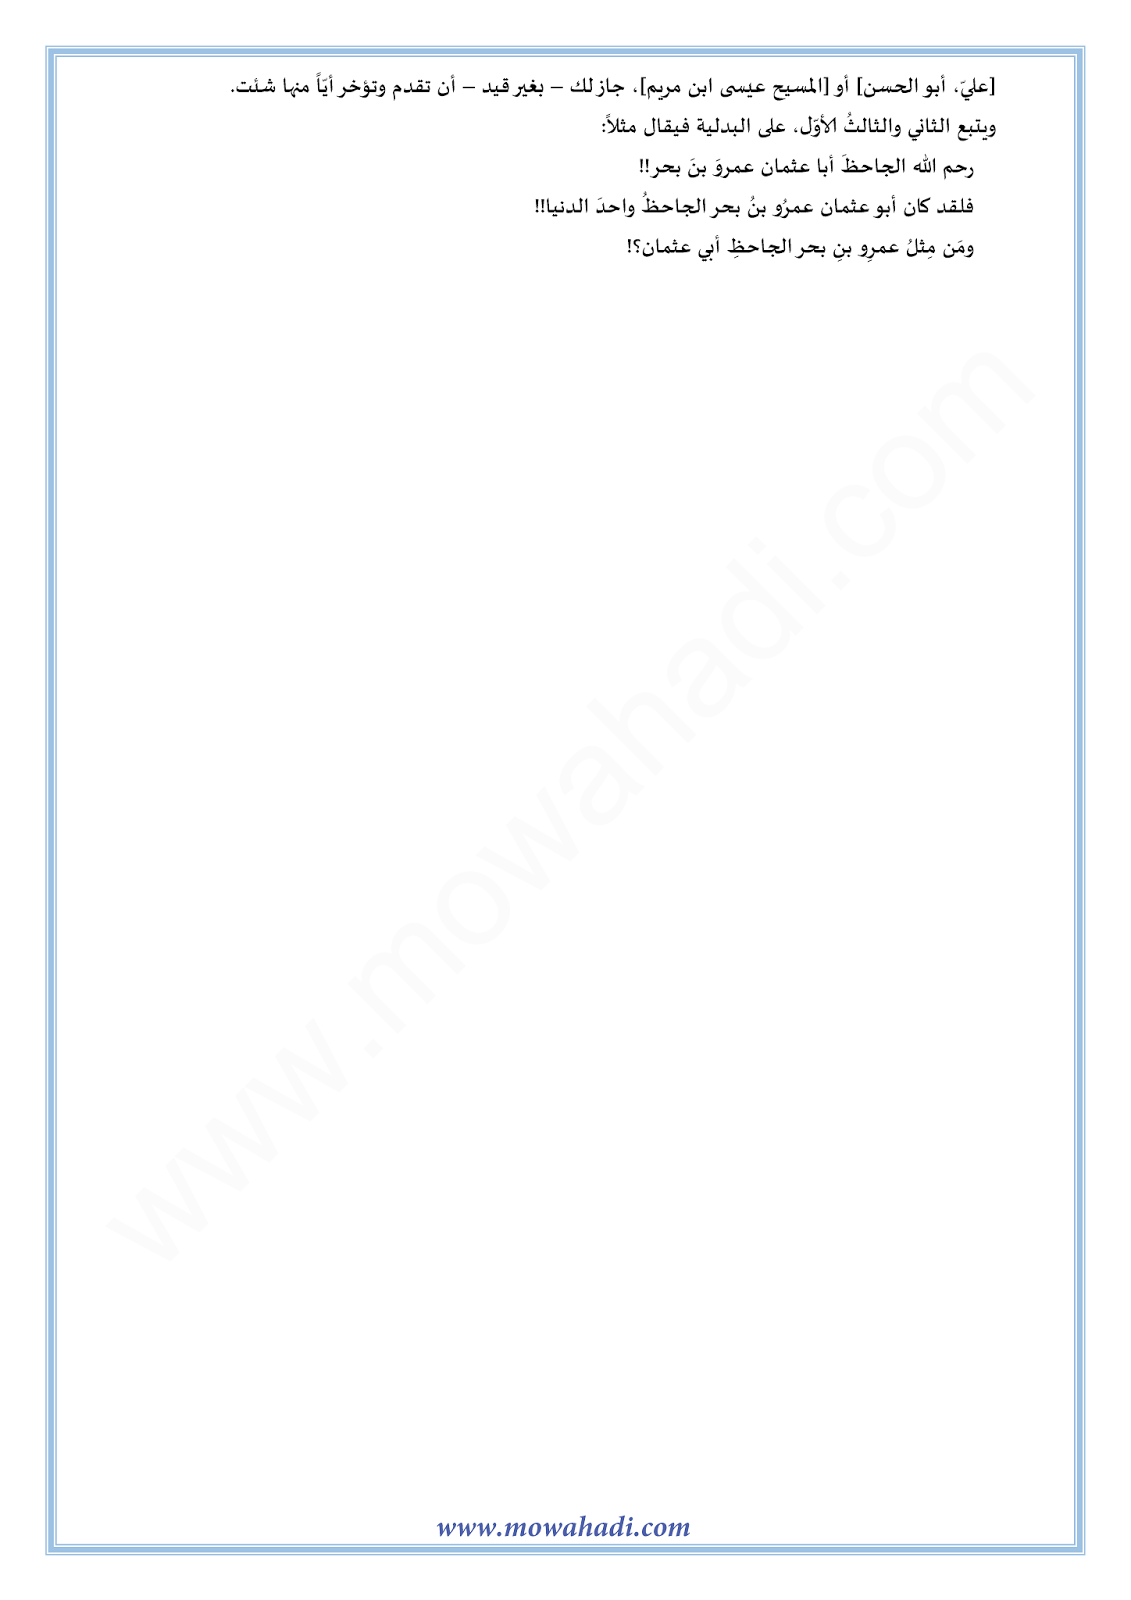 الدرس اللغوي العلم للسنة الأولى اعدادي في مادة اللغة العربية 13-cours-dars-loghawi1_002